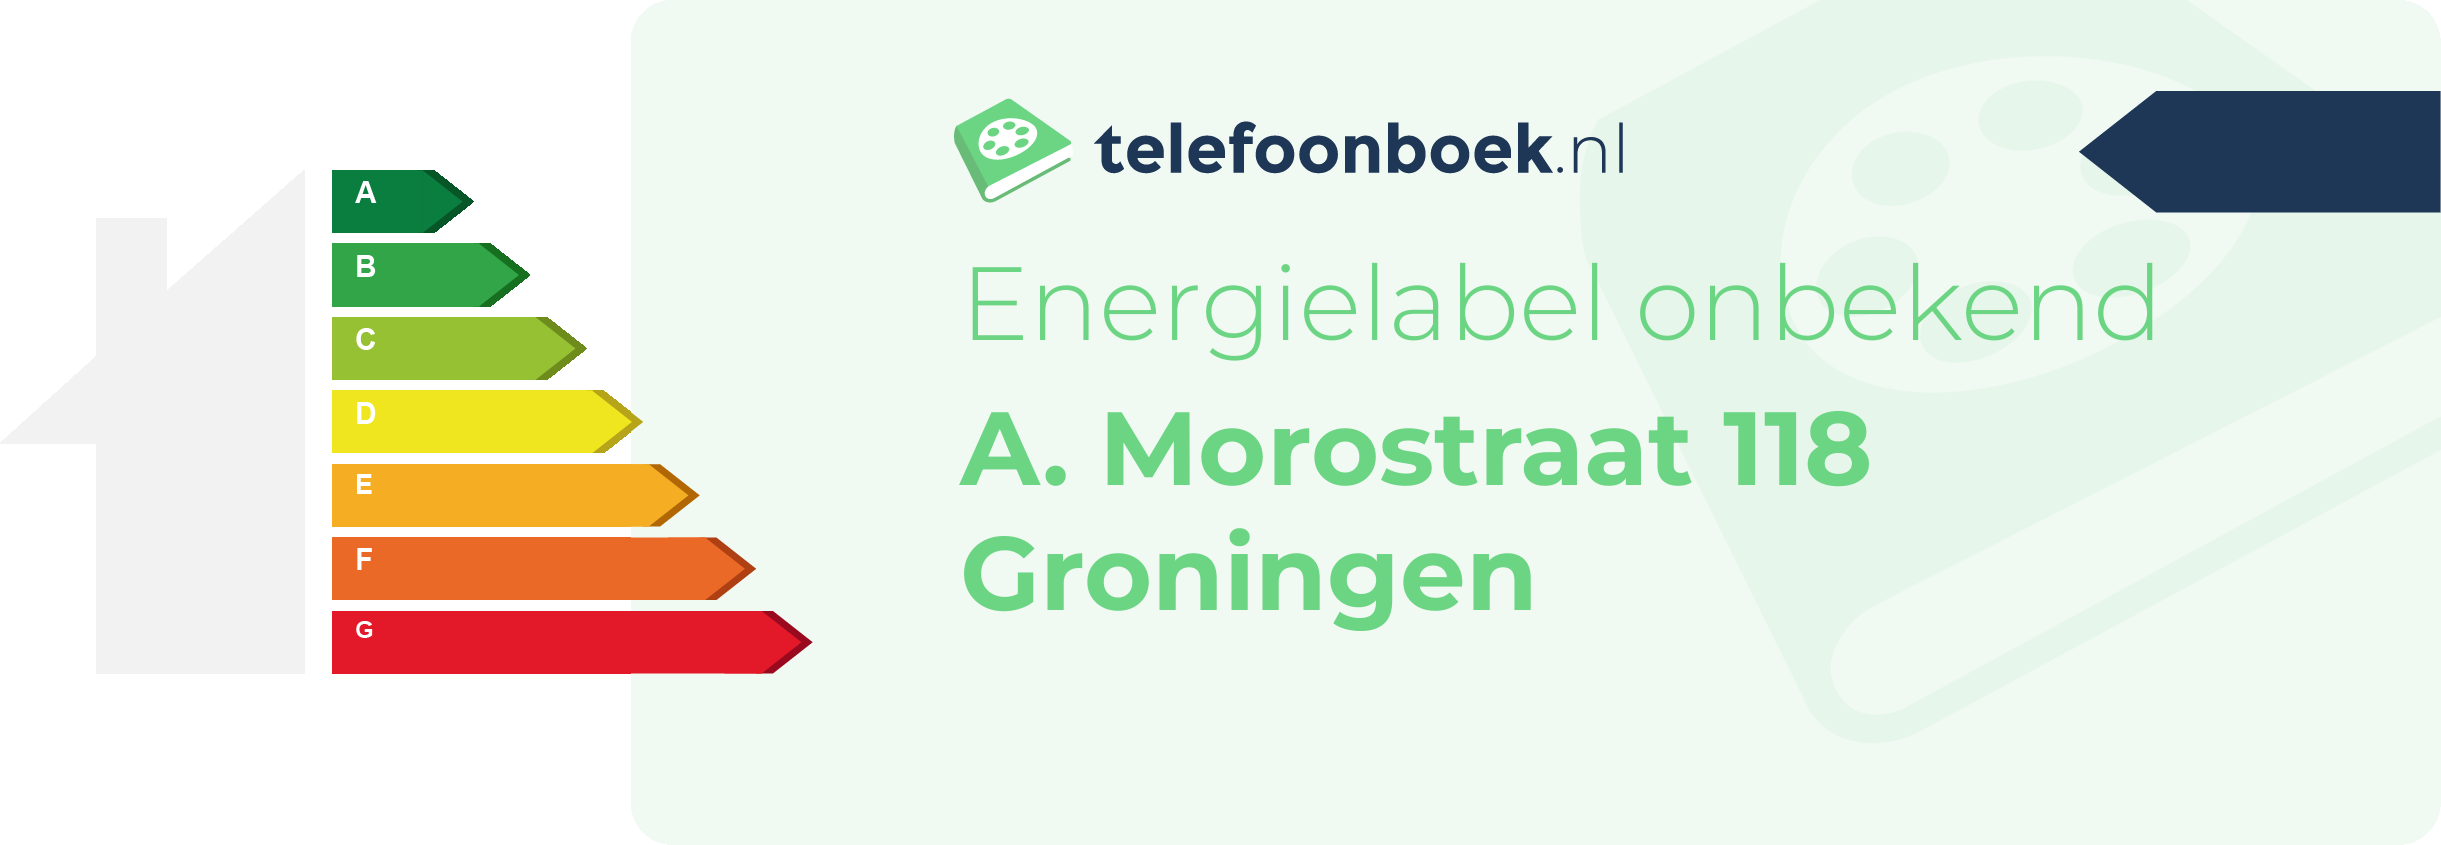 Energielabel A. Morostraat 118 Groningen